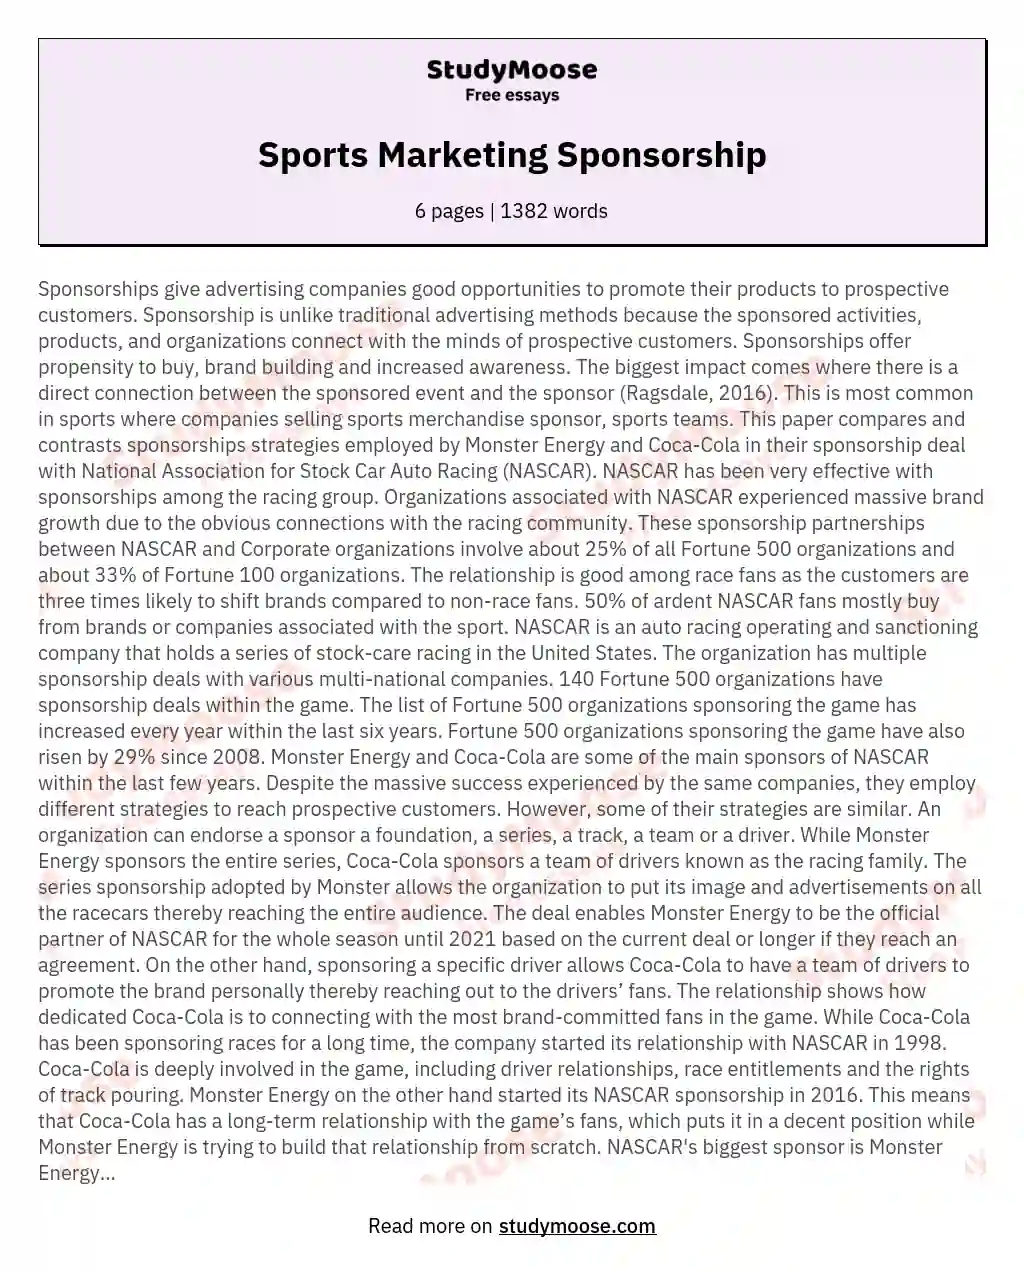 Sports Marketing Sponsorship essay